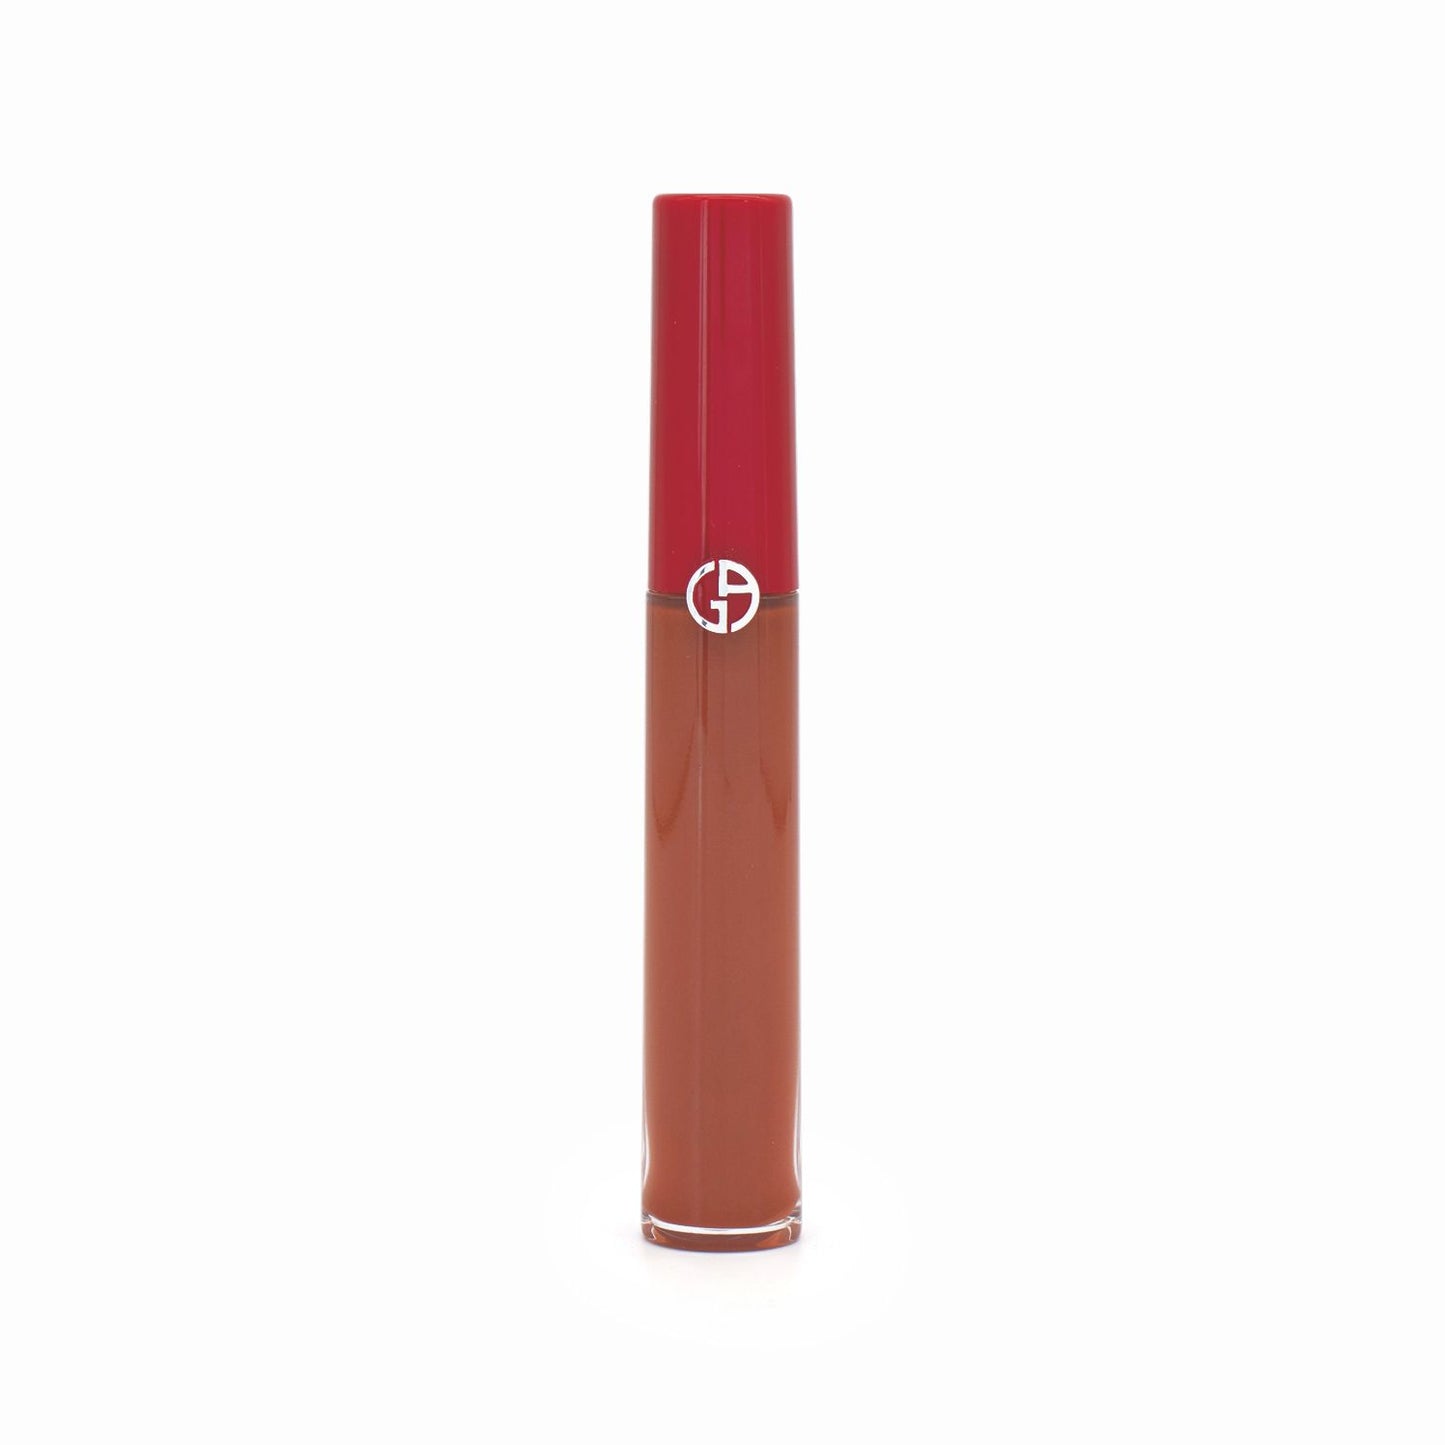 Giorgio Armani Lip Maestro 6.5ml Venetian Red 208 - Imperfect Box